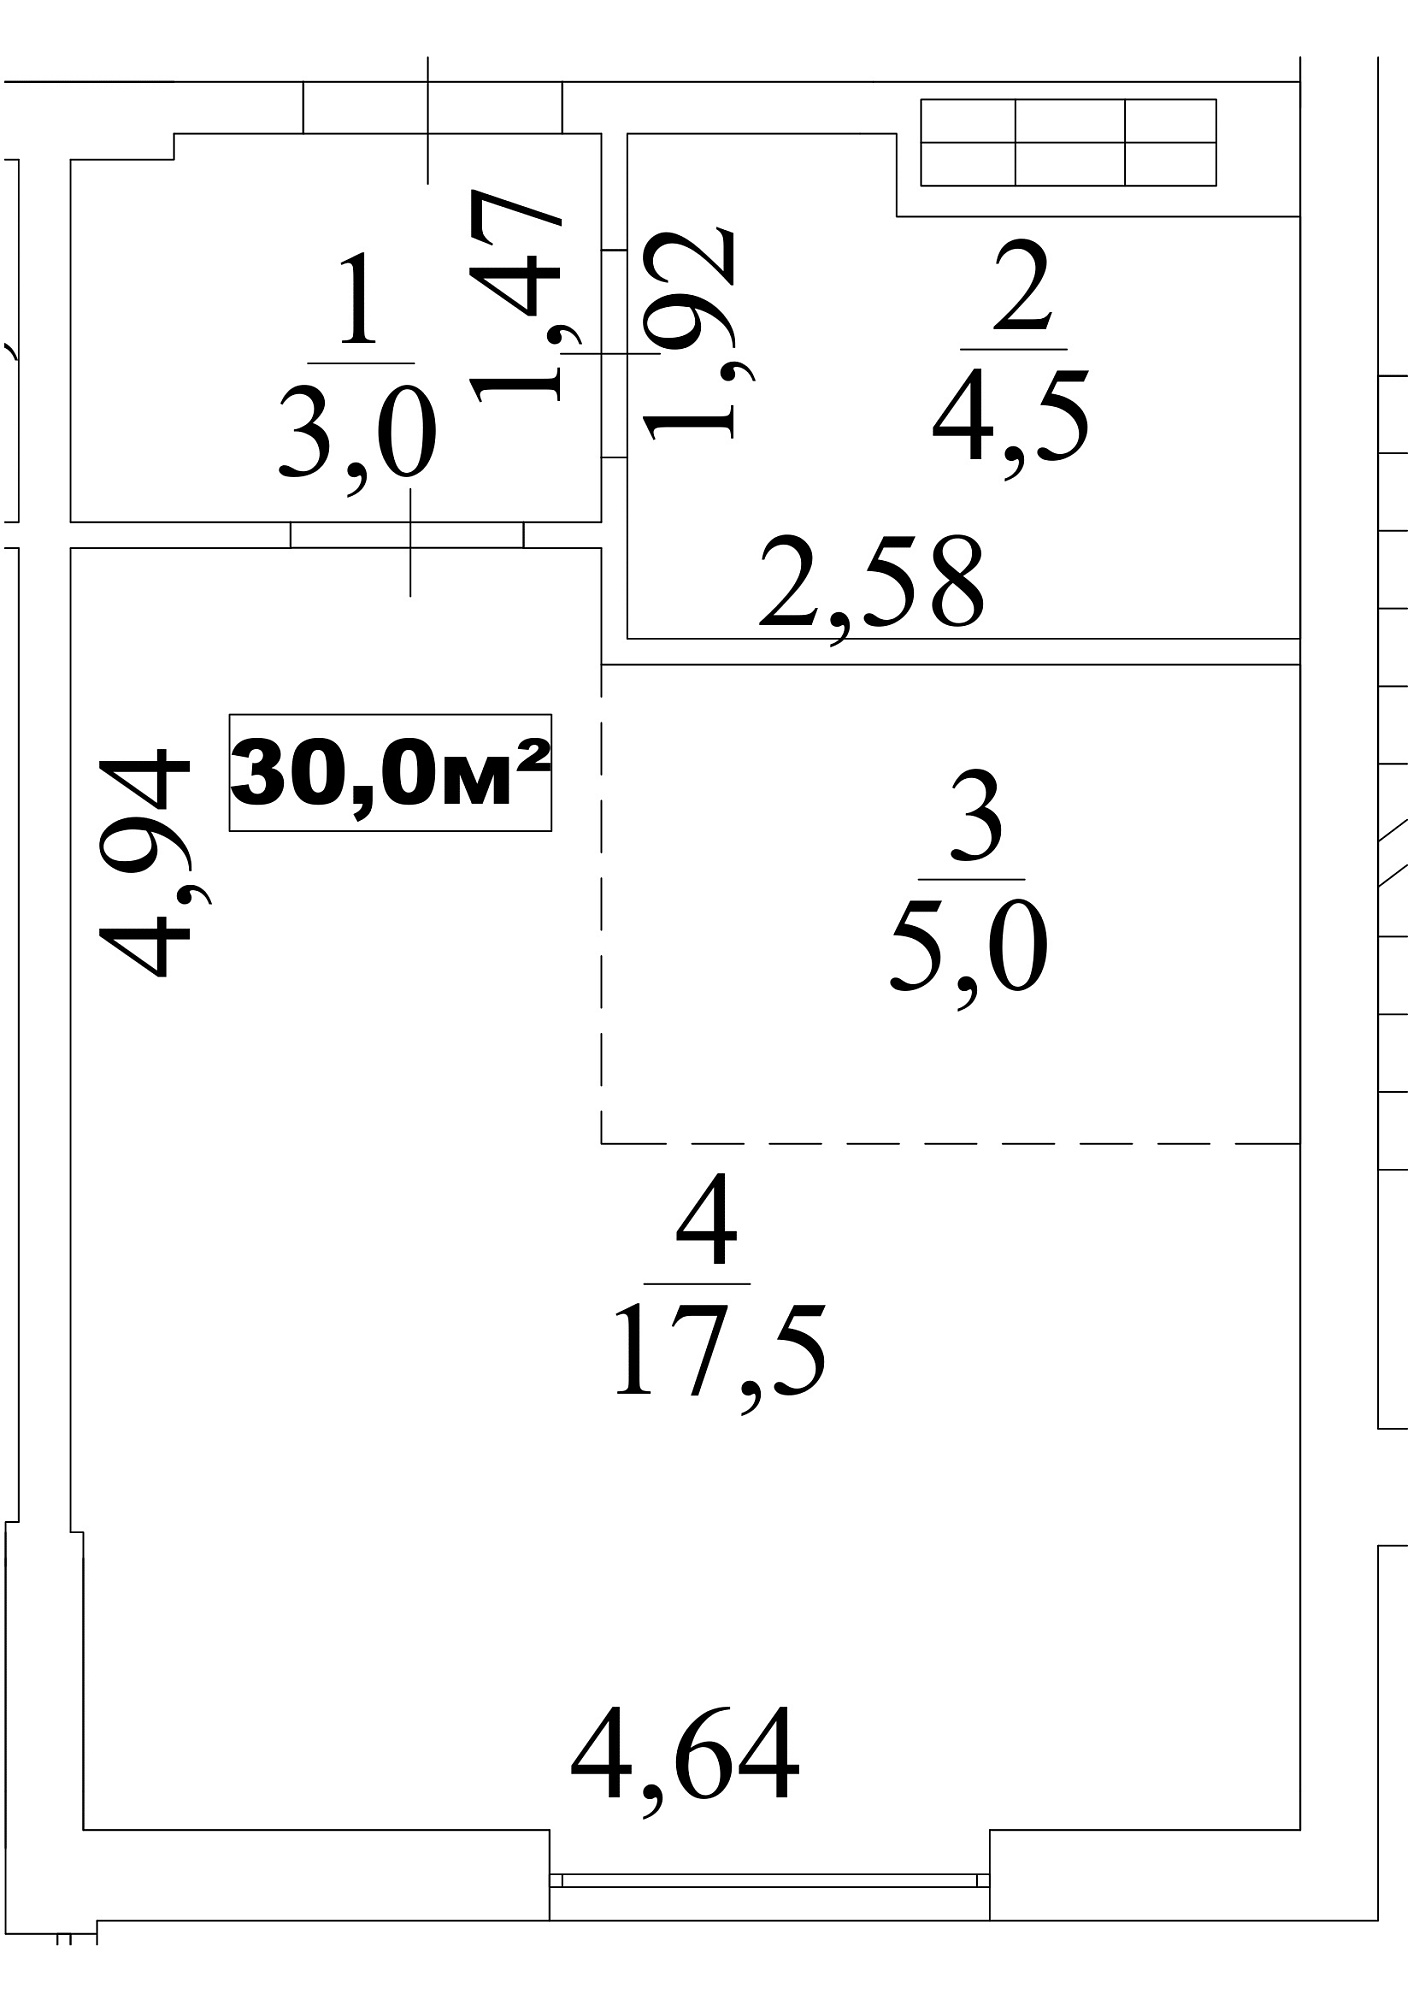 Планування Smart-квартира площею 30м2, AB-10-05/0037а.